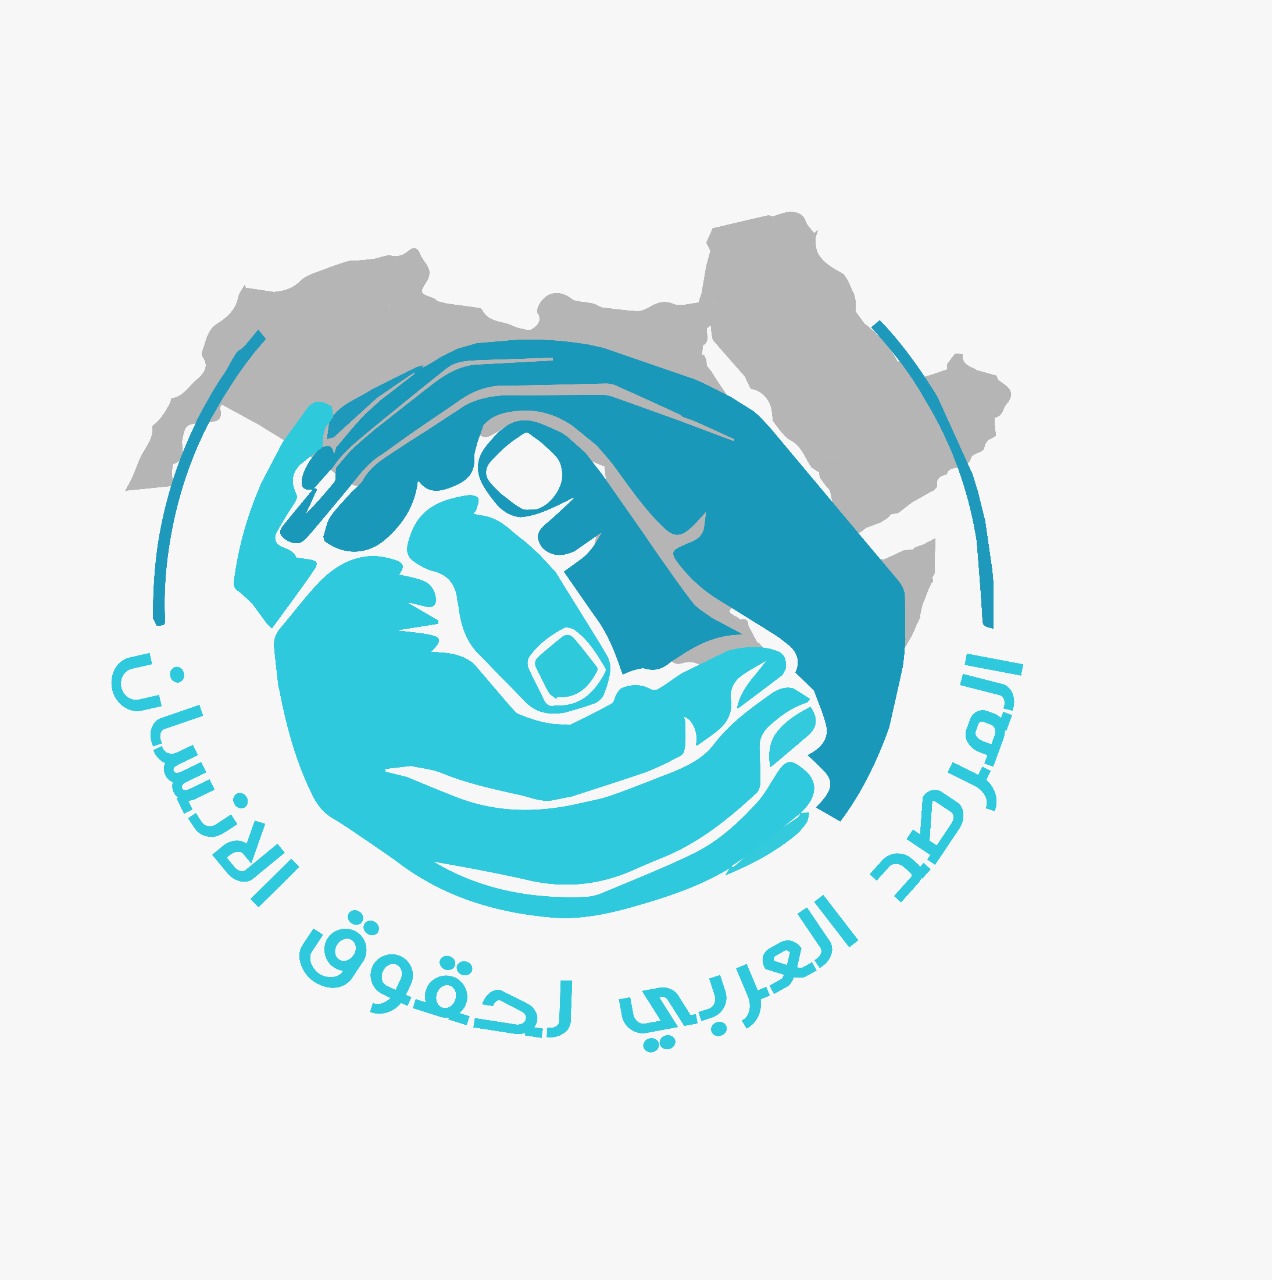 لجنة رصد ومتابعة حالة حقوق الإنسان في المرصد العربي لحقوق الإنسان تعقد أولى اجتماعاتها، وتناقش فكرة المؤشر العربي لحقوق الإنسان بين المقترحات وآليات التطبيق